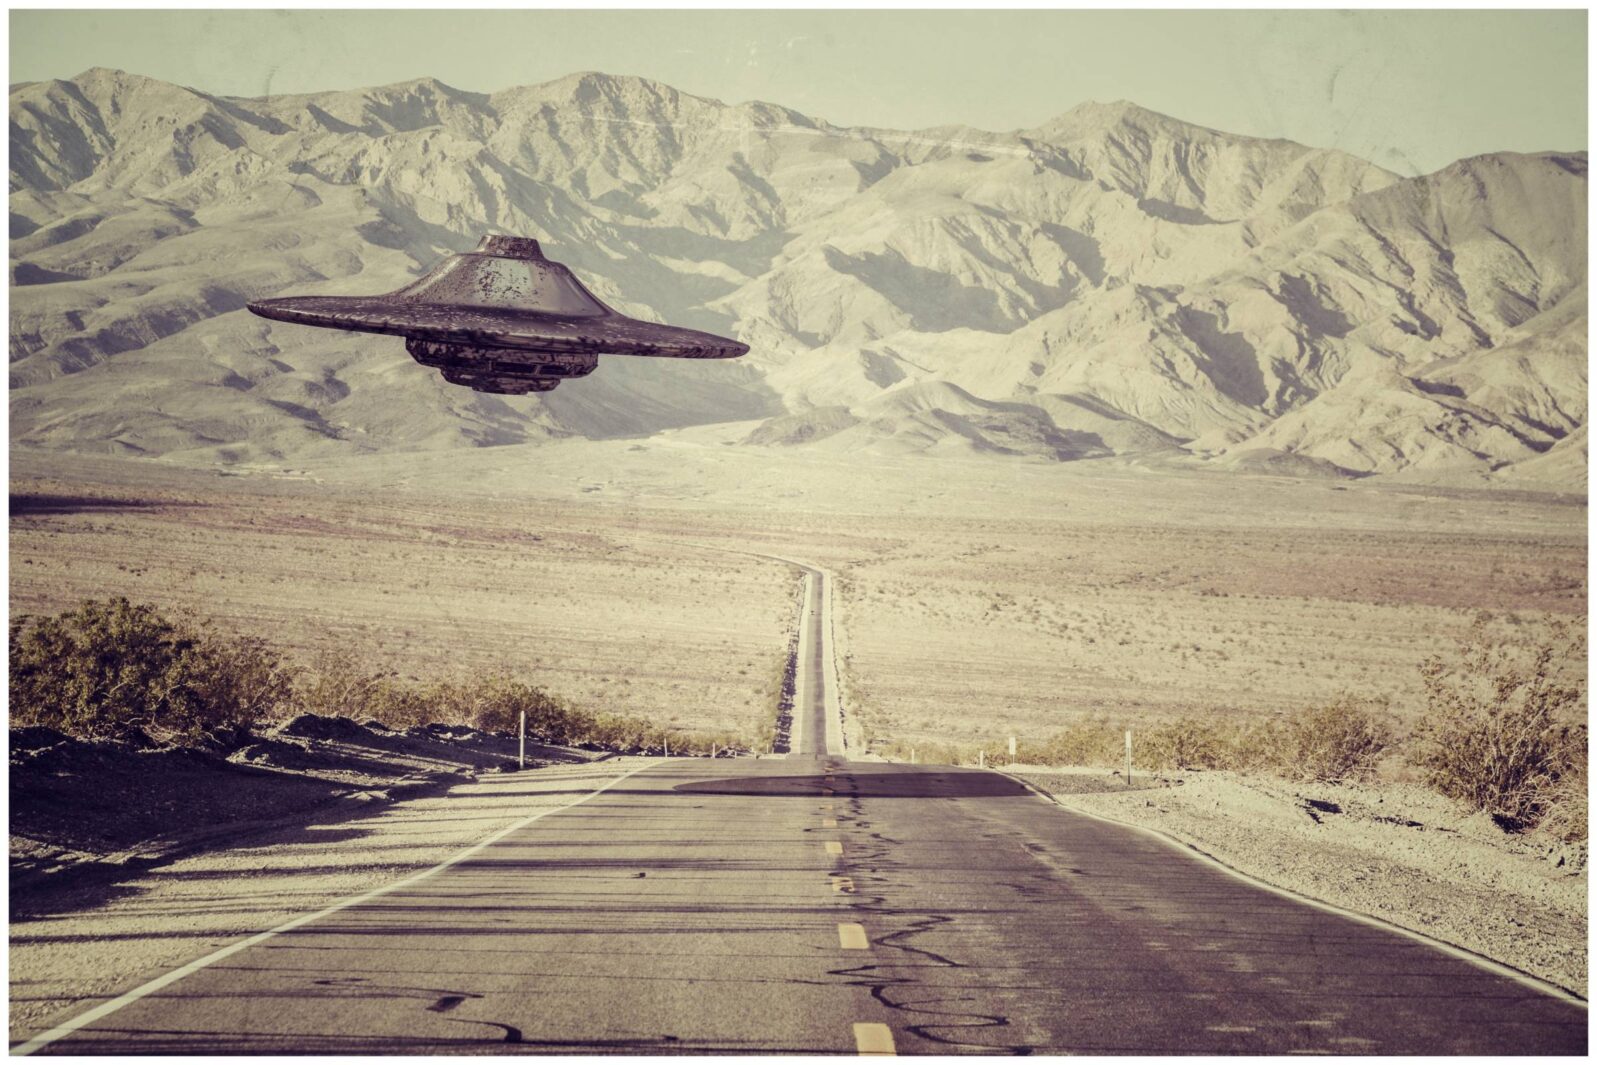 ufo flying over the desert